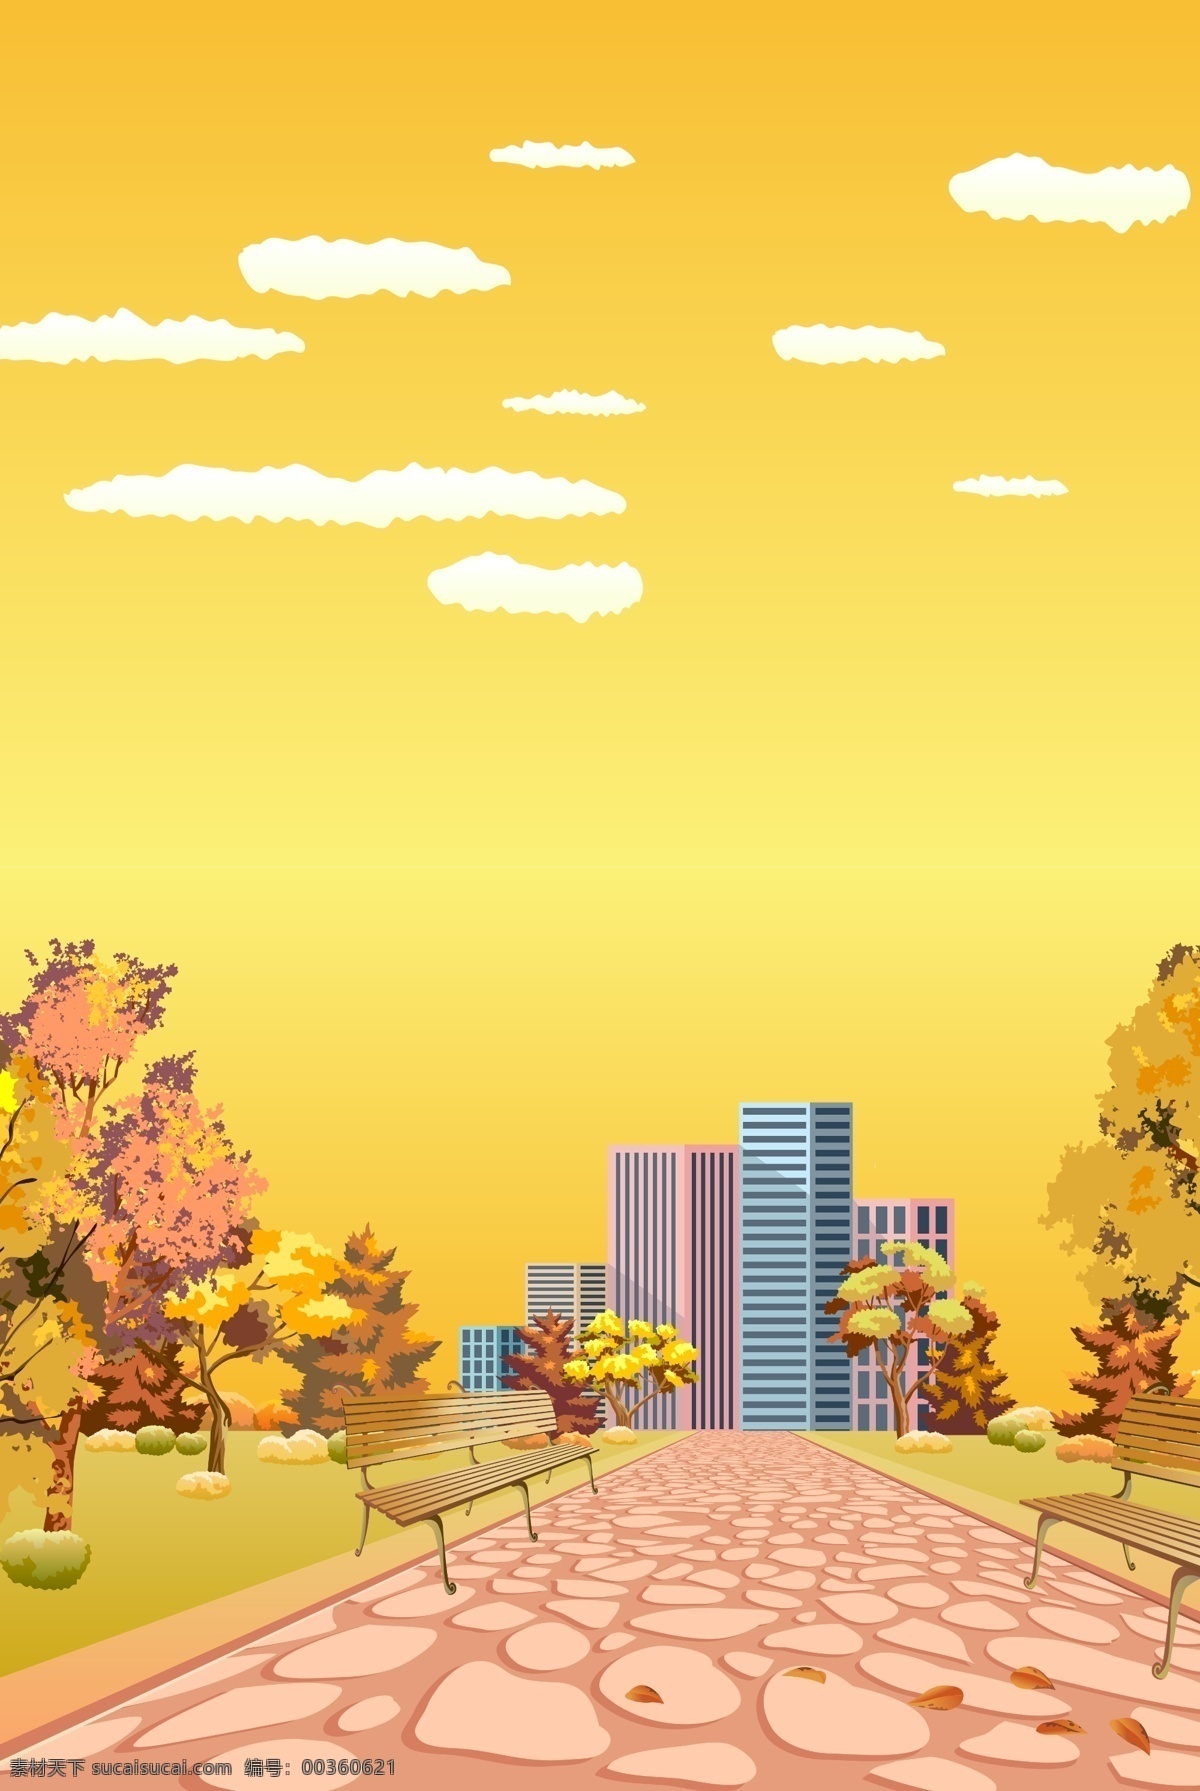 城市 秋季 夕阳 景色 秋色 天空 风景 旅游 自然风景 四季春光 花鸟 秋季风光